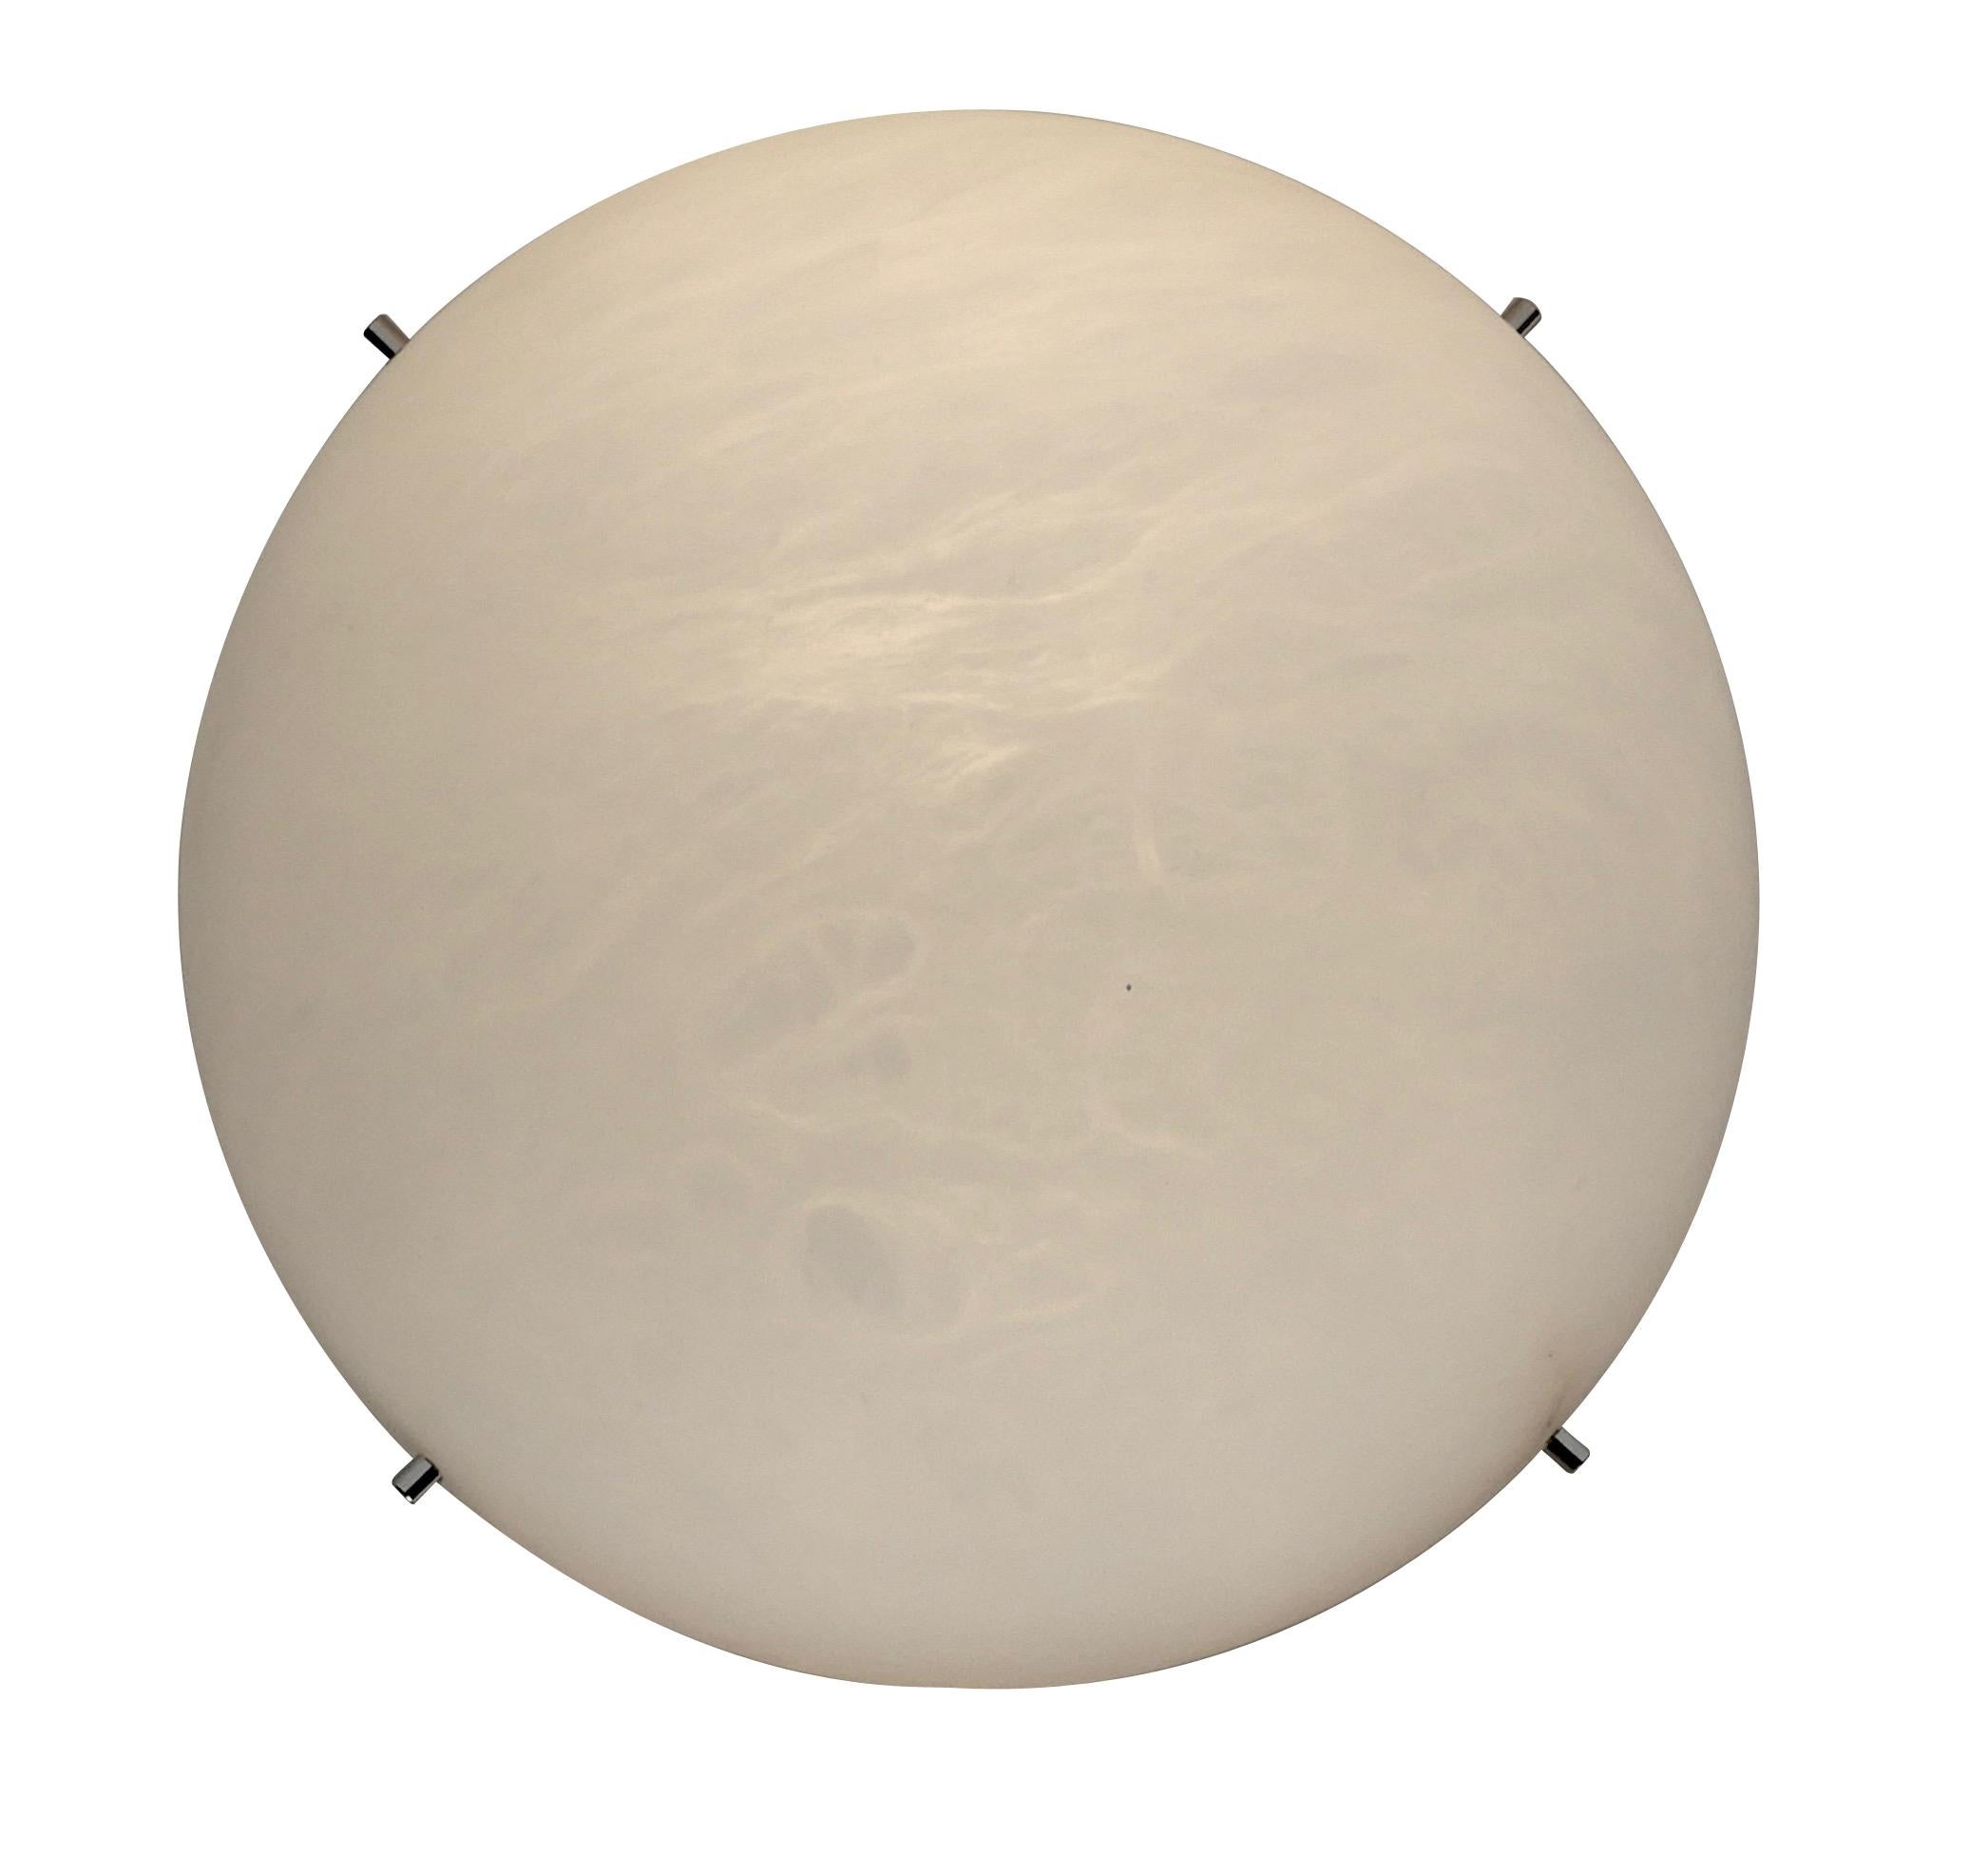 wand- oder Deckenleuchte 'Moon' aus Alabaster nach dem Vorbild von Pierre Chareau. Handgefertigt in Los Angeles in der Werkstatt des renommierten französischen Designers und Antiquitätenhändlers Denis de le Mesiere, der die Arbeit von Pierre Chareau